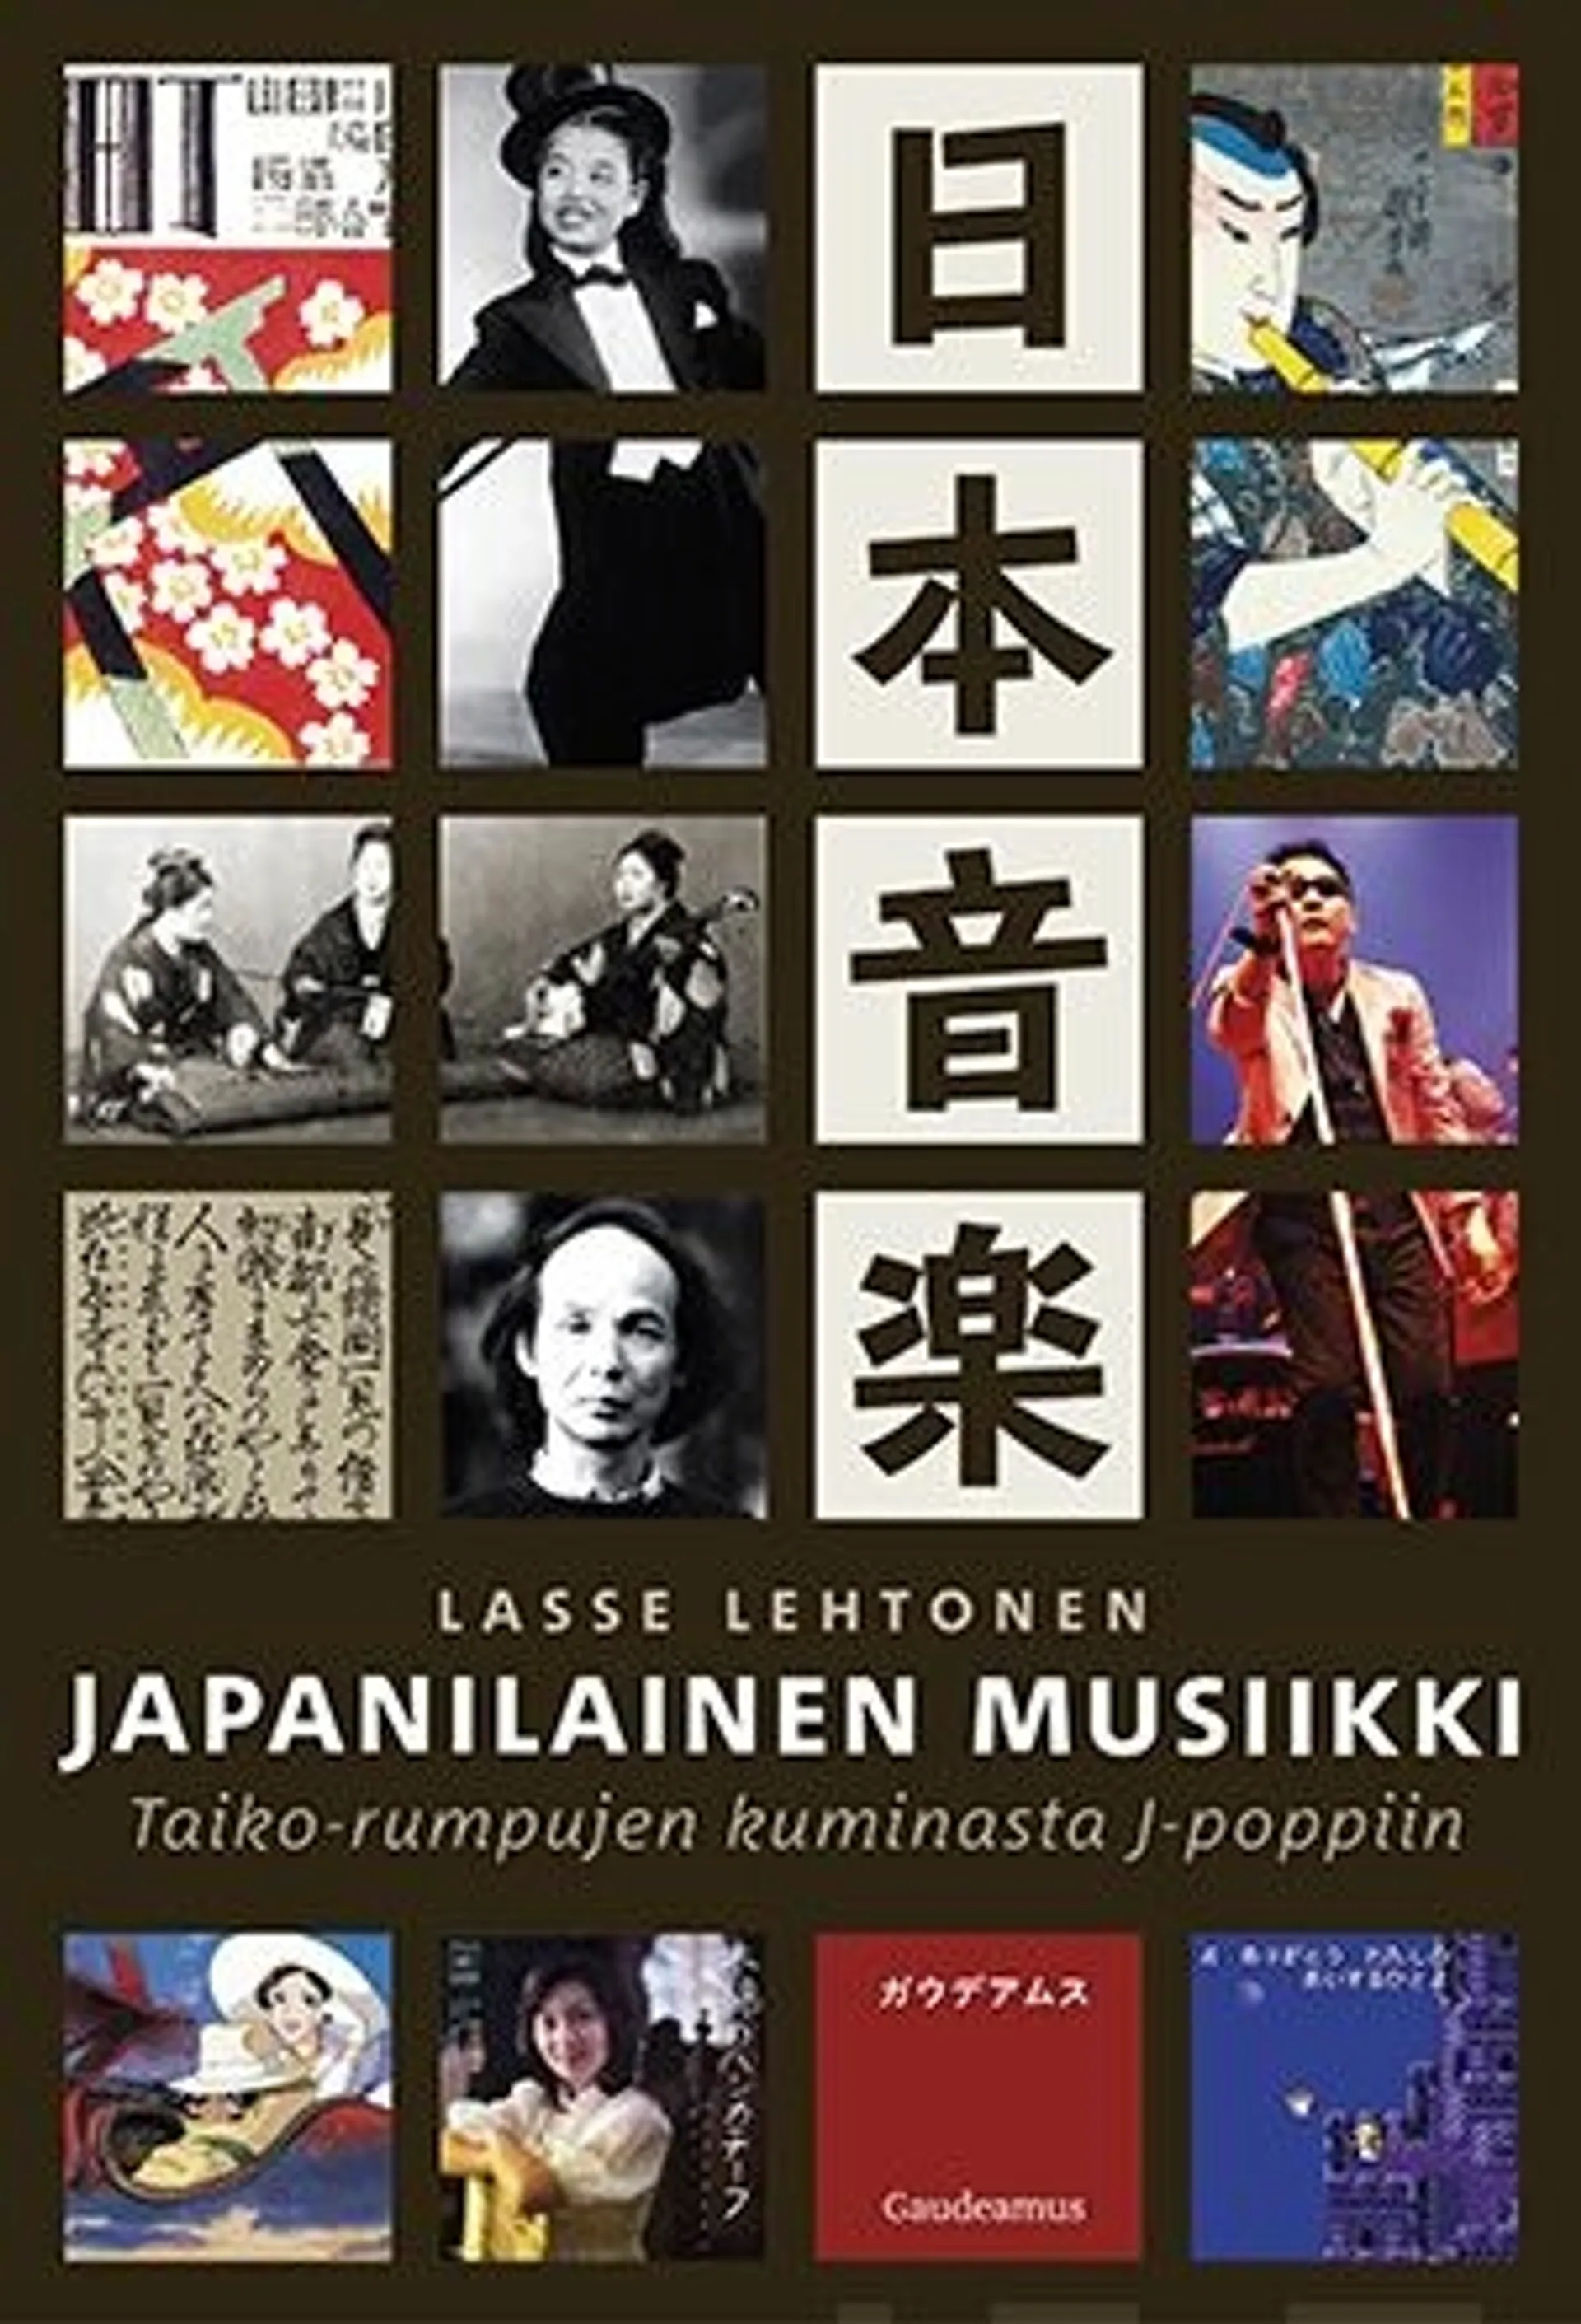 Lehtonen, Japanilainen musiikki